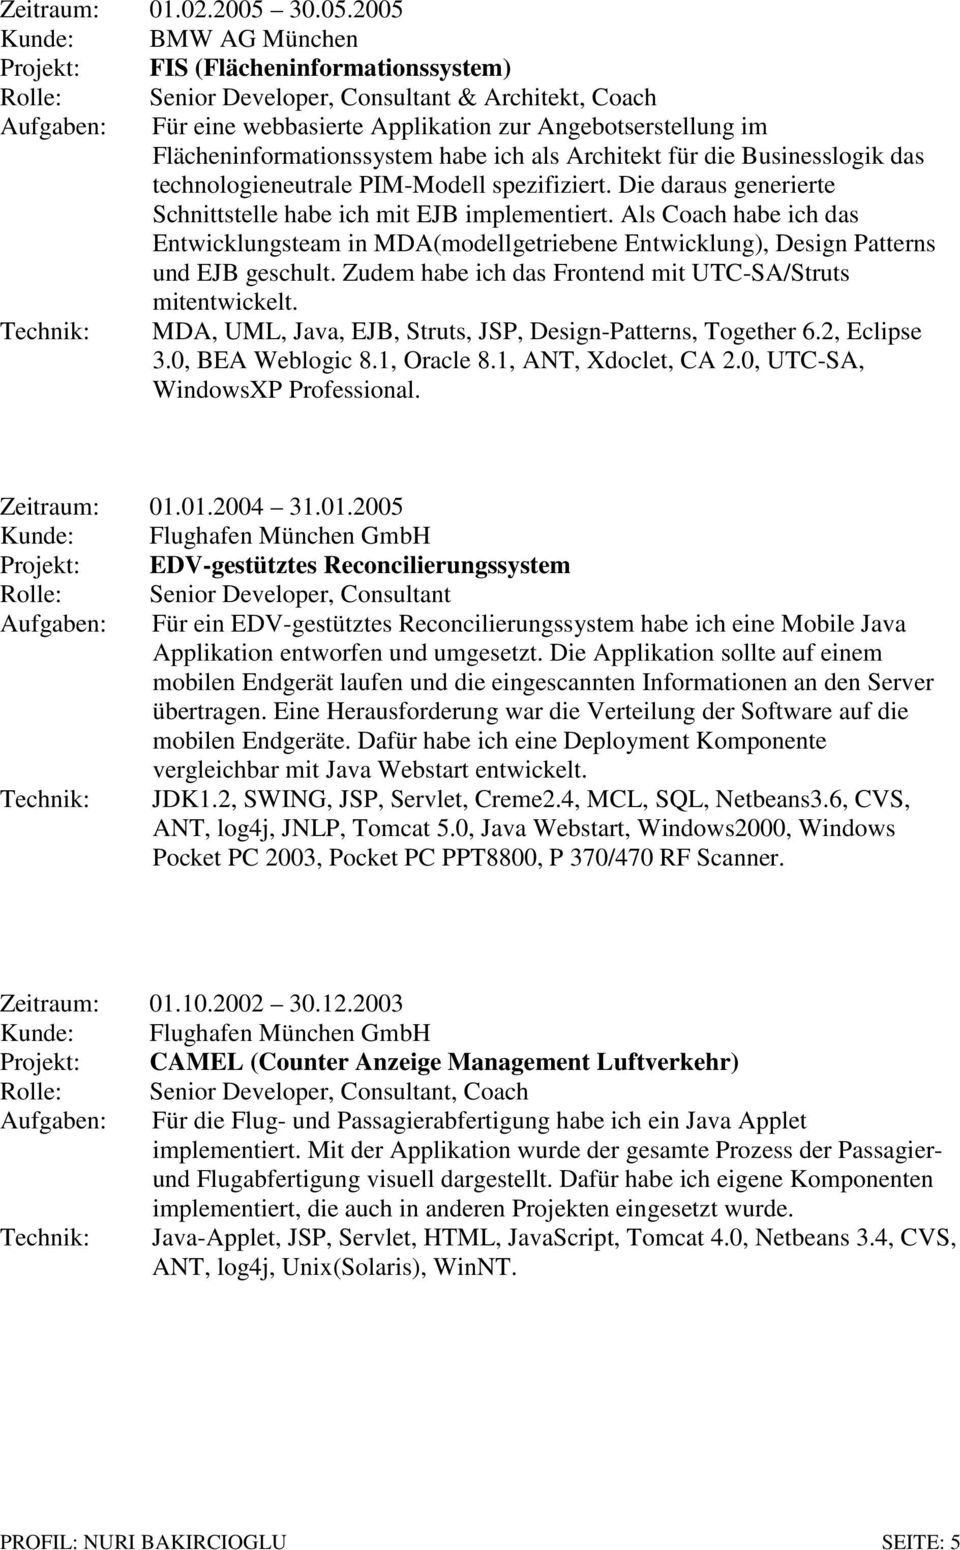 2005 Kunde: BMW AG München Projekt: FIS (Flächeninformationssystem) Rolle: Senior Developer, Consultant & Architekt, Coach Aufgaben: Für eine webbasierte Applikation zur Angebotserstellung im